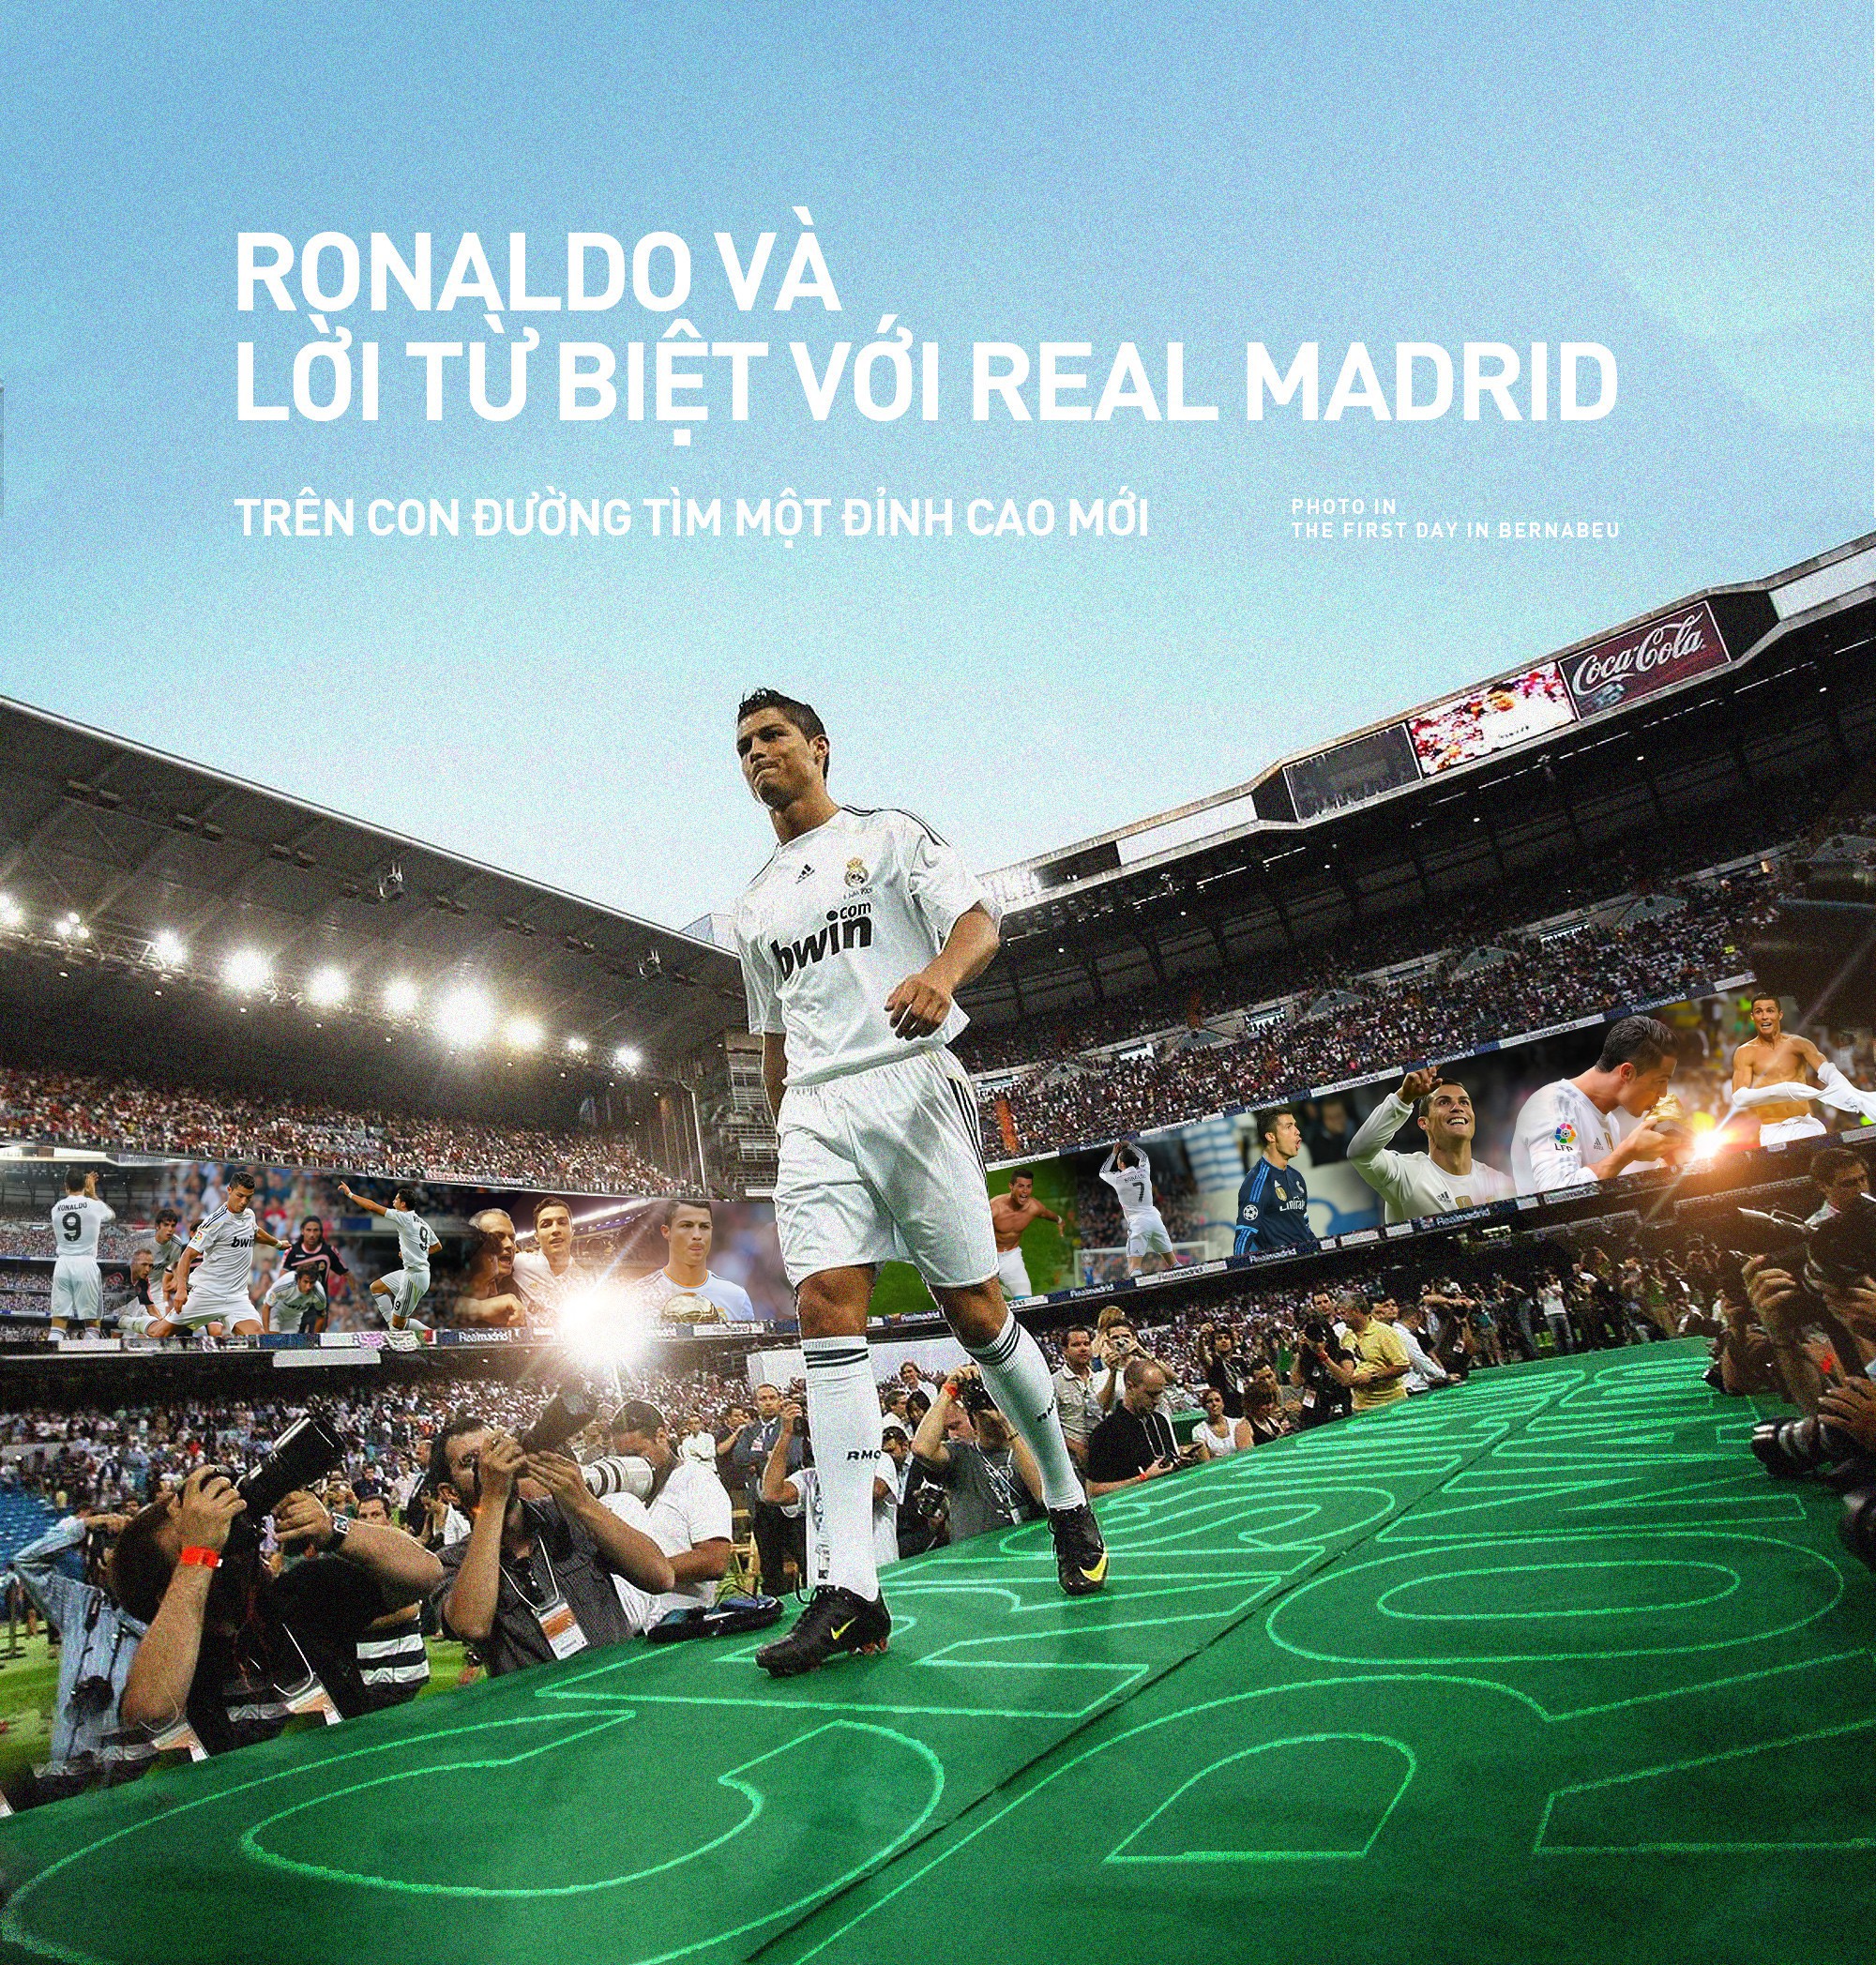 Ronaldo, Real Madrid: Ronaldo đã để lại dấu ấn sâu đậm tại Real Madrid với hàng trăm bàn thắng và hàng loạt danh hiệu. Xem hình ảnh cho từ khóa Ronaldo, Real Madrid để được ngắm nhìn cầu thủ xuất sắc này trong màu áo đội bóng Hoàng gia Tây Ban Nha.